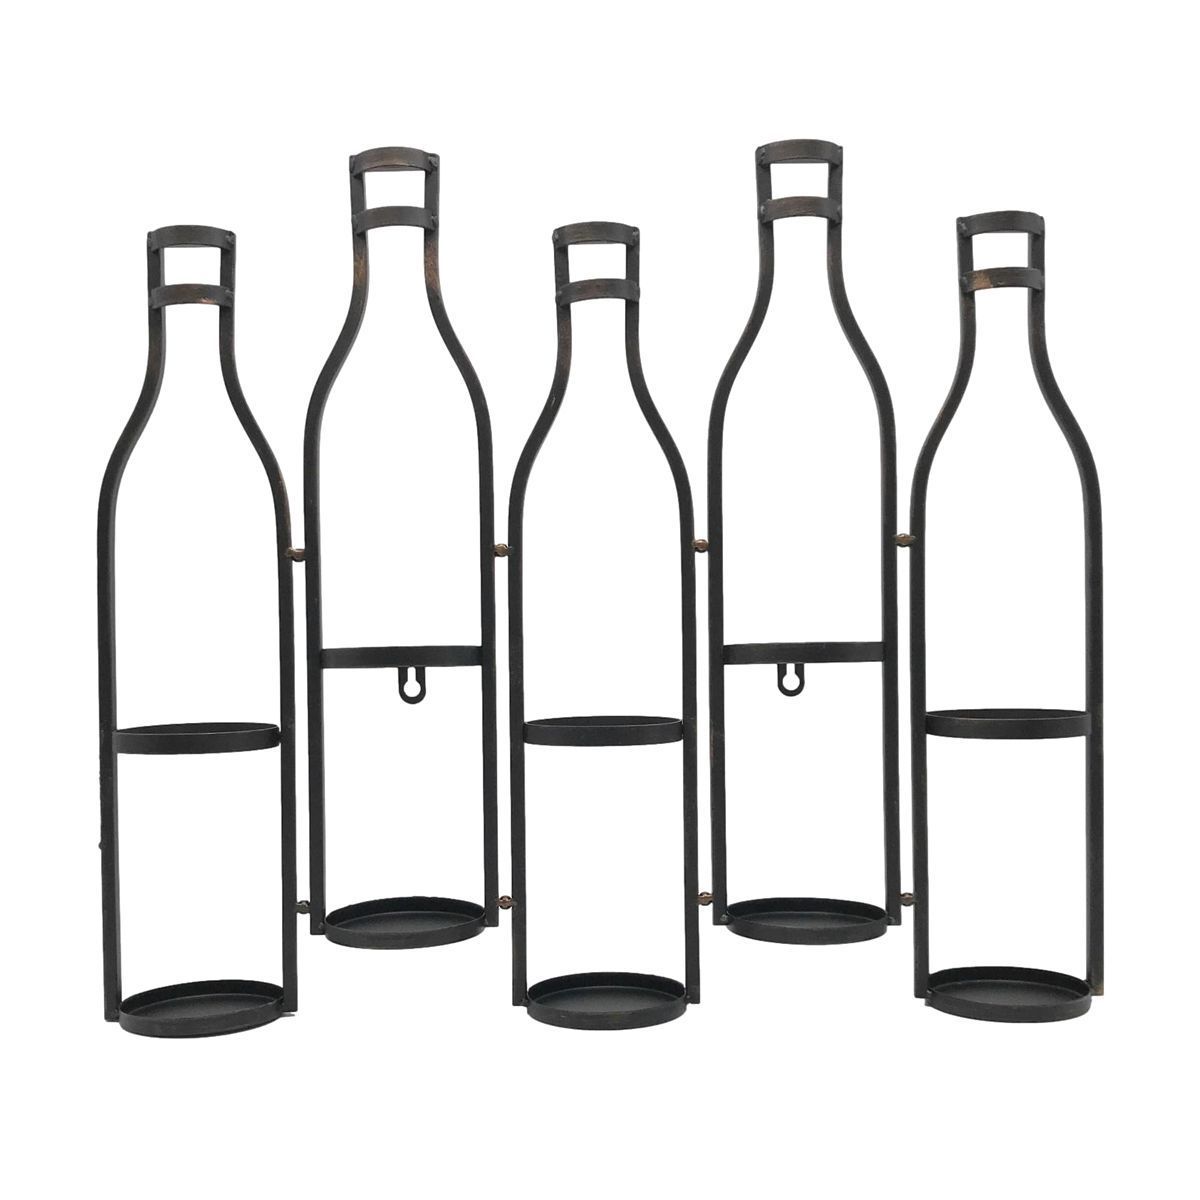 ワインボトルホルダー 壁掛け用 ボトルモチーフ アンティーク風 アイアン製 5本用 (ブロンズ)